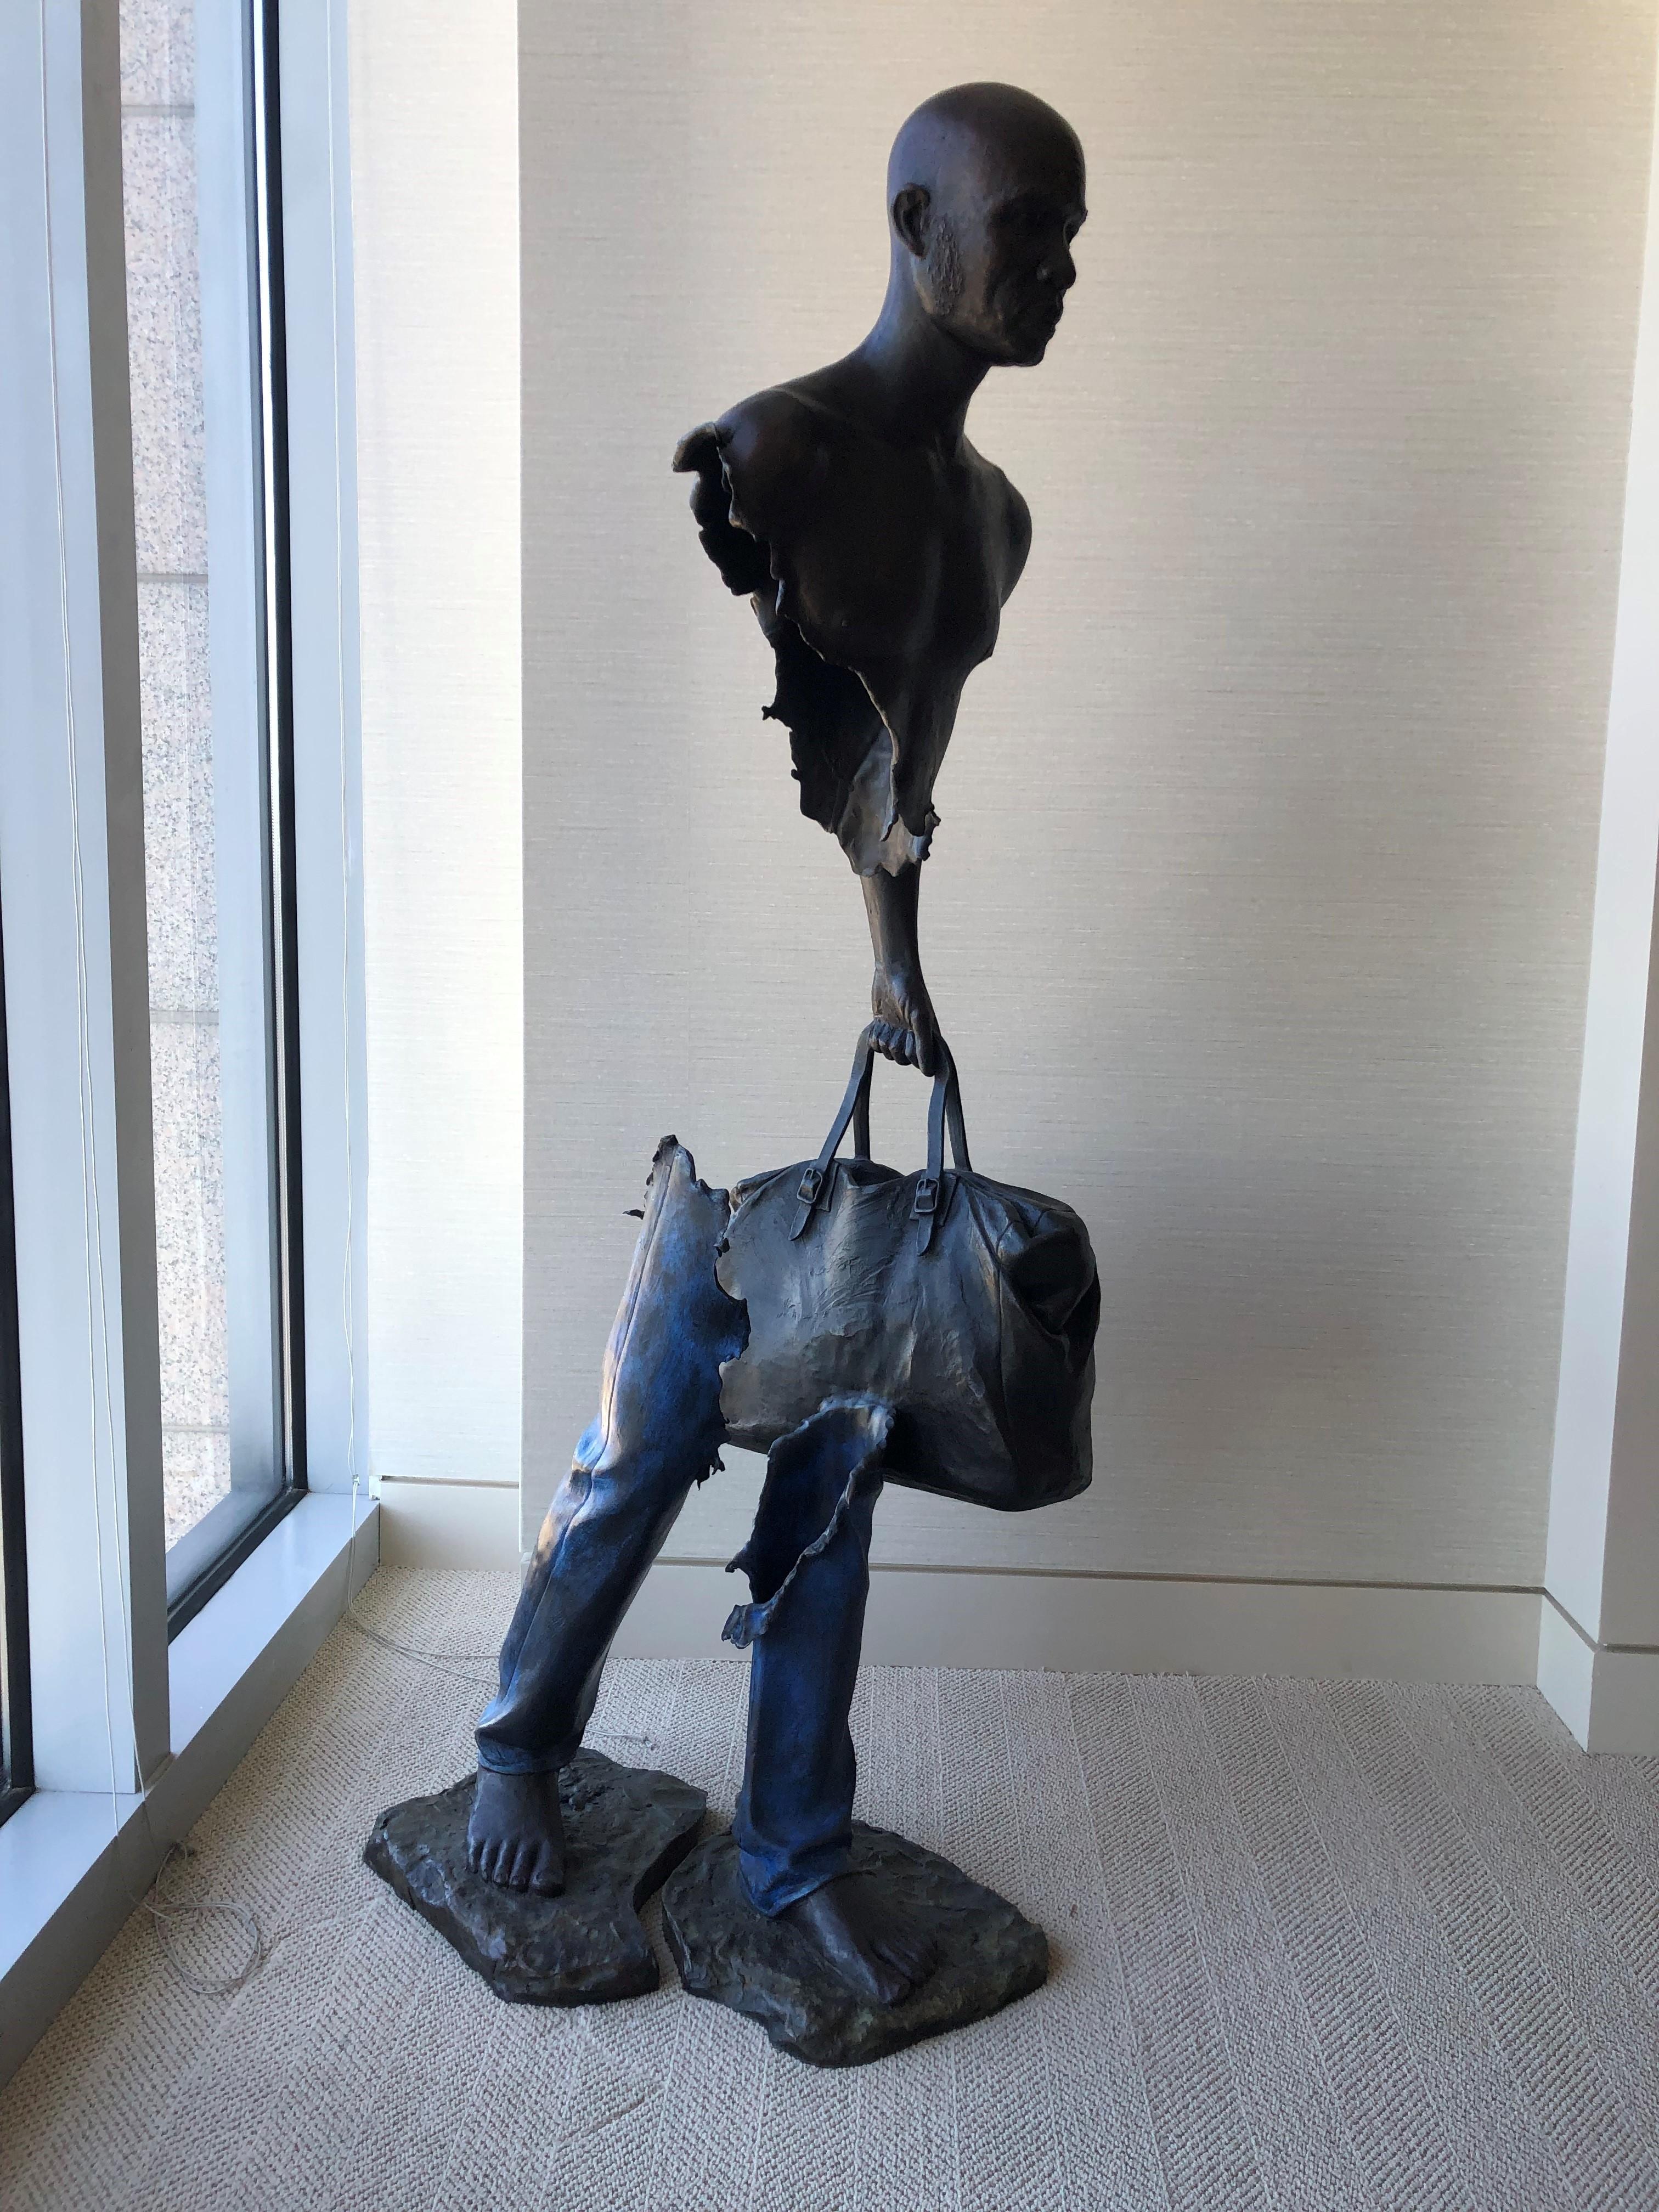 Ouvrir les Frontières pour Mr. Olingou - Sculpture by Bruno CATALANO